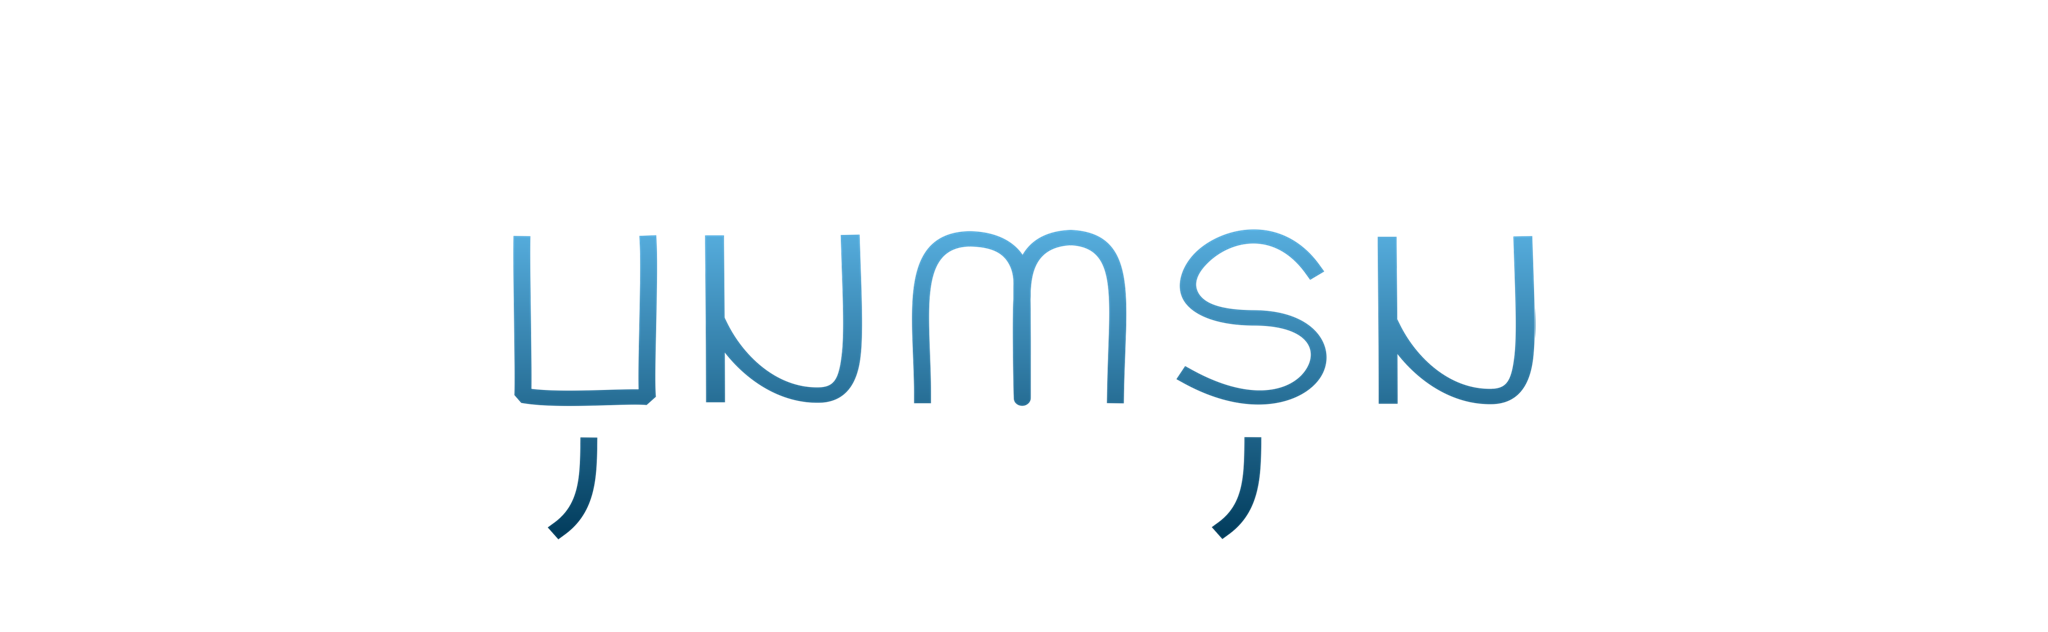 Rusa's Legacy